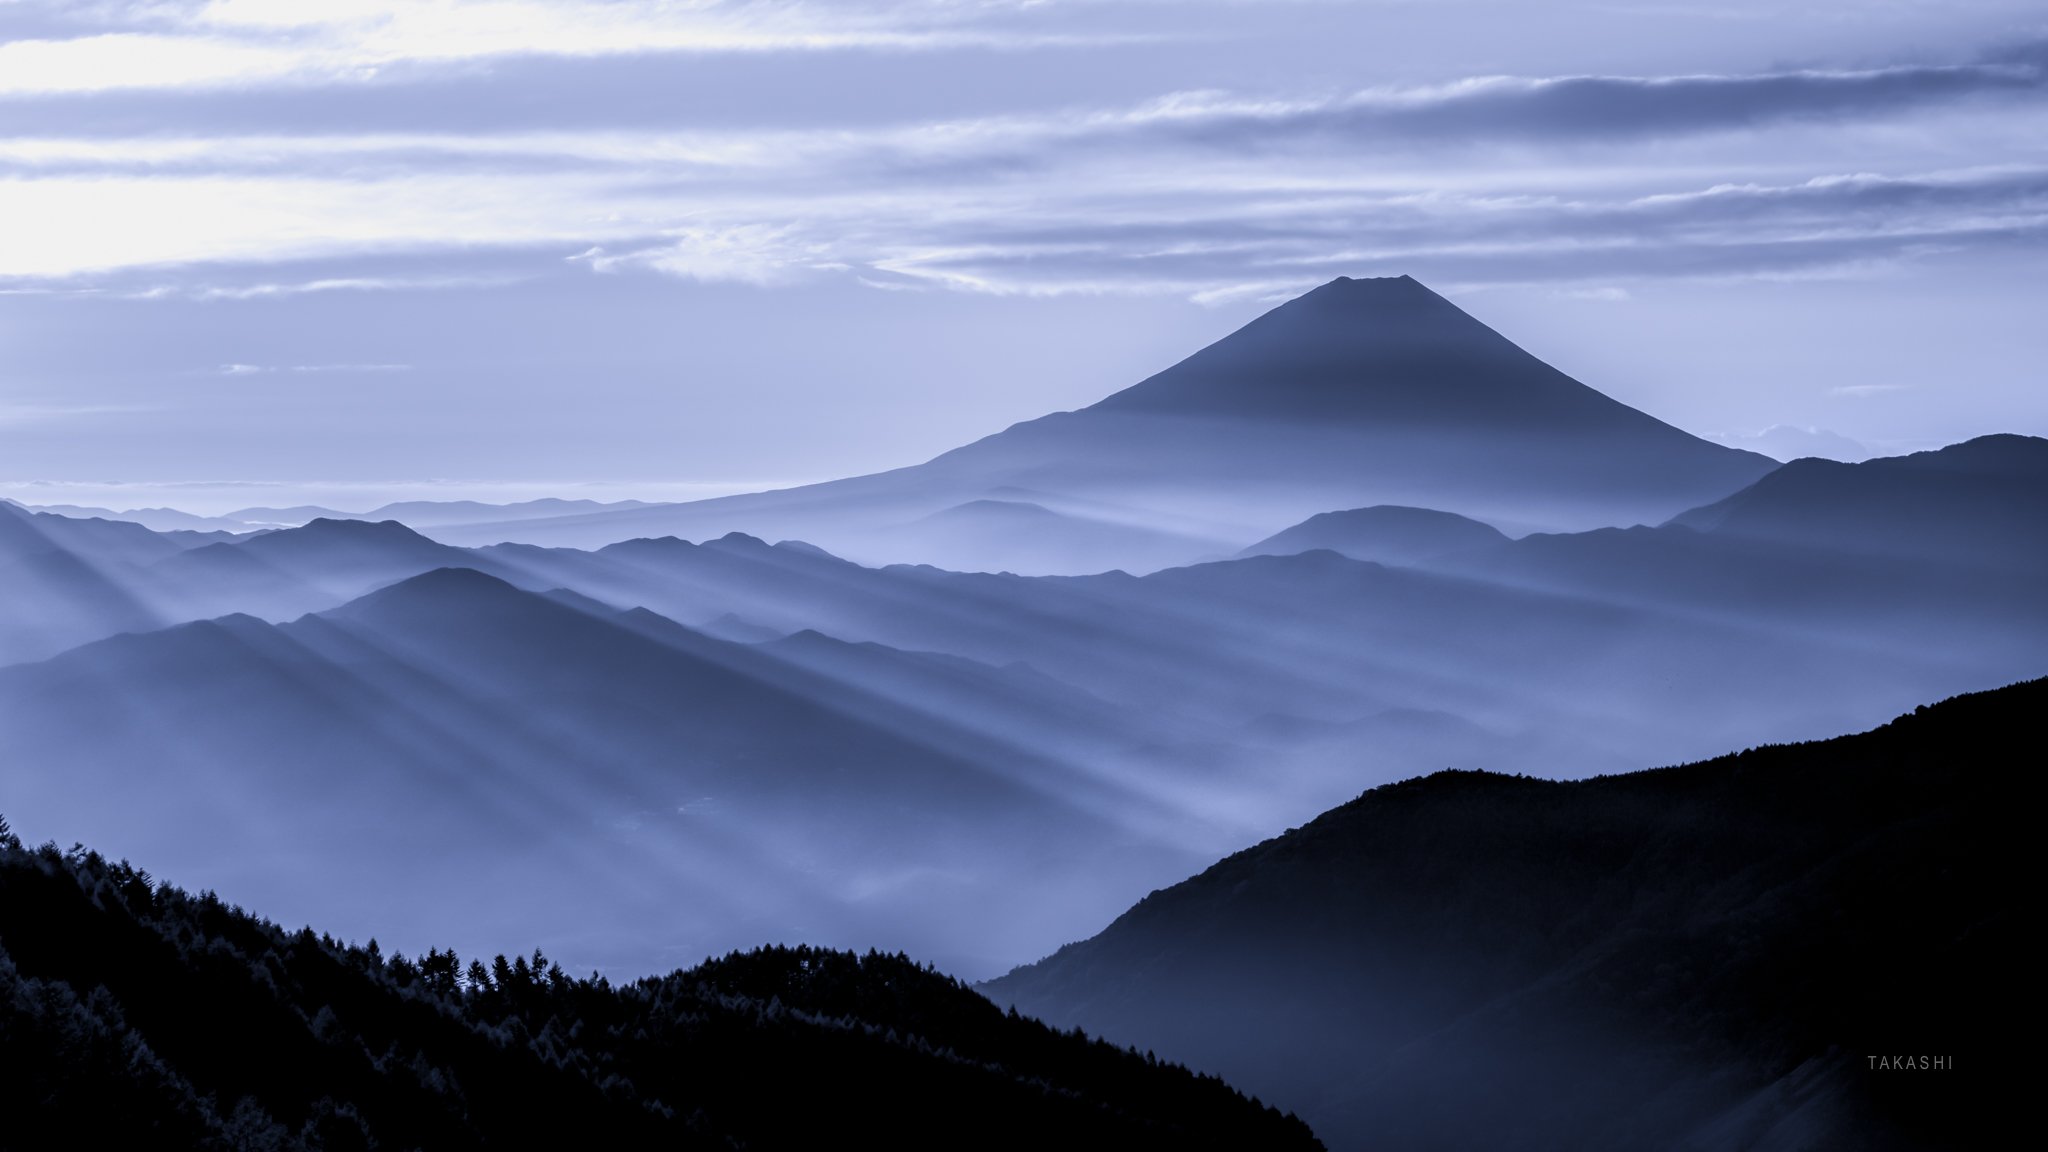 Fuji,mountain,Japan,haze,gas,fog,light,sunrise, Takashi